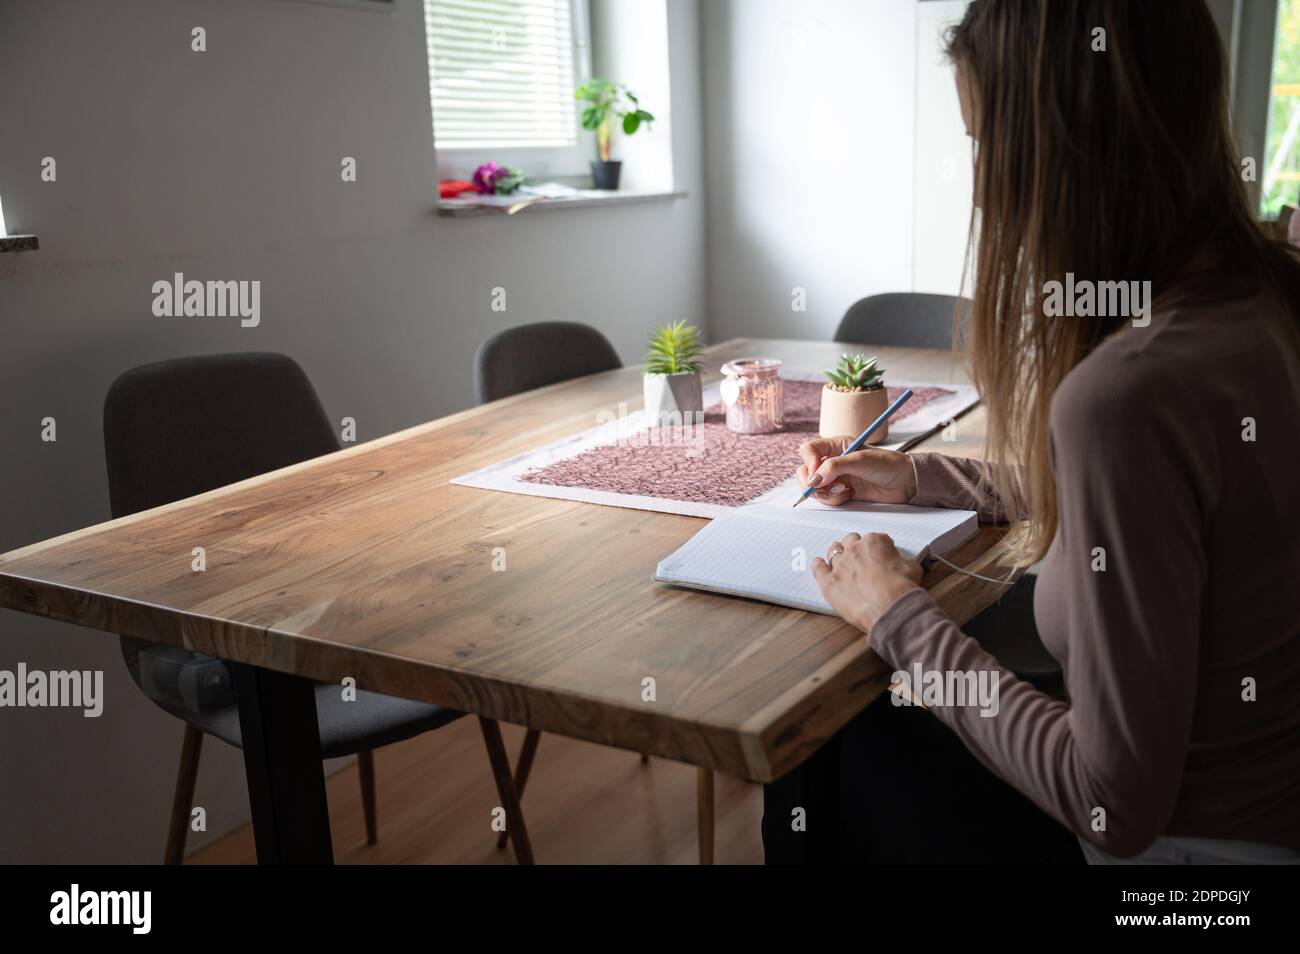 Une jeune femme, une étudiante, assise à la maison repas table écrire dans le bloc-notes dans une image conceptuelle de homeschooling ou de travail à la maison. Banque D'Images